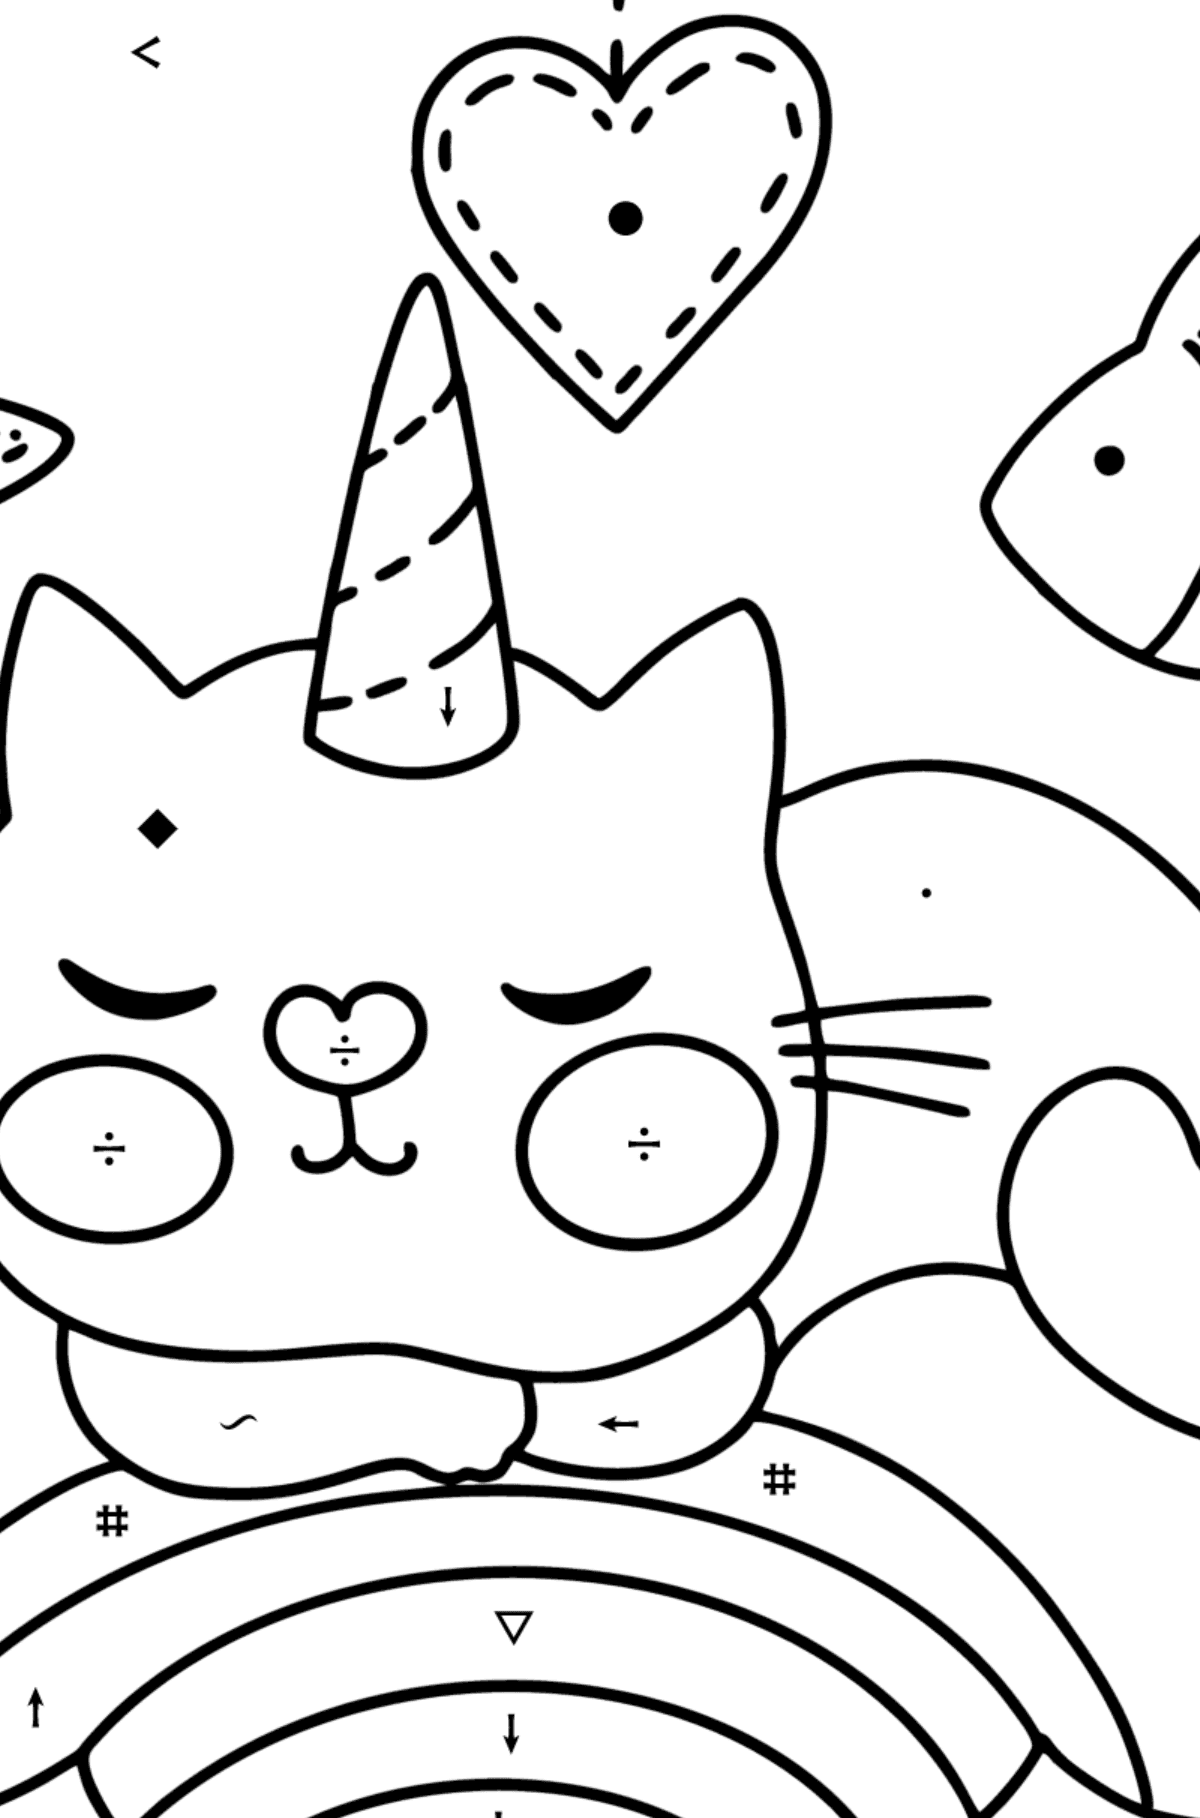 Dibujo de Precioso Gato Unicornio para colorear - Colorear por Símbolos para Niños